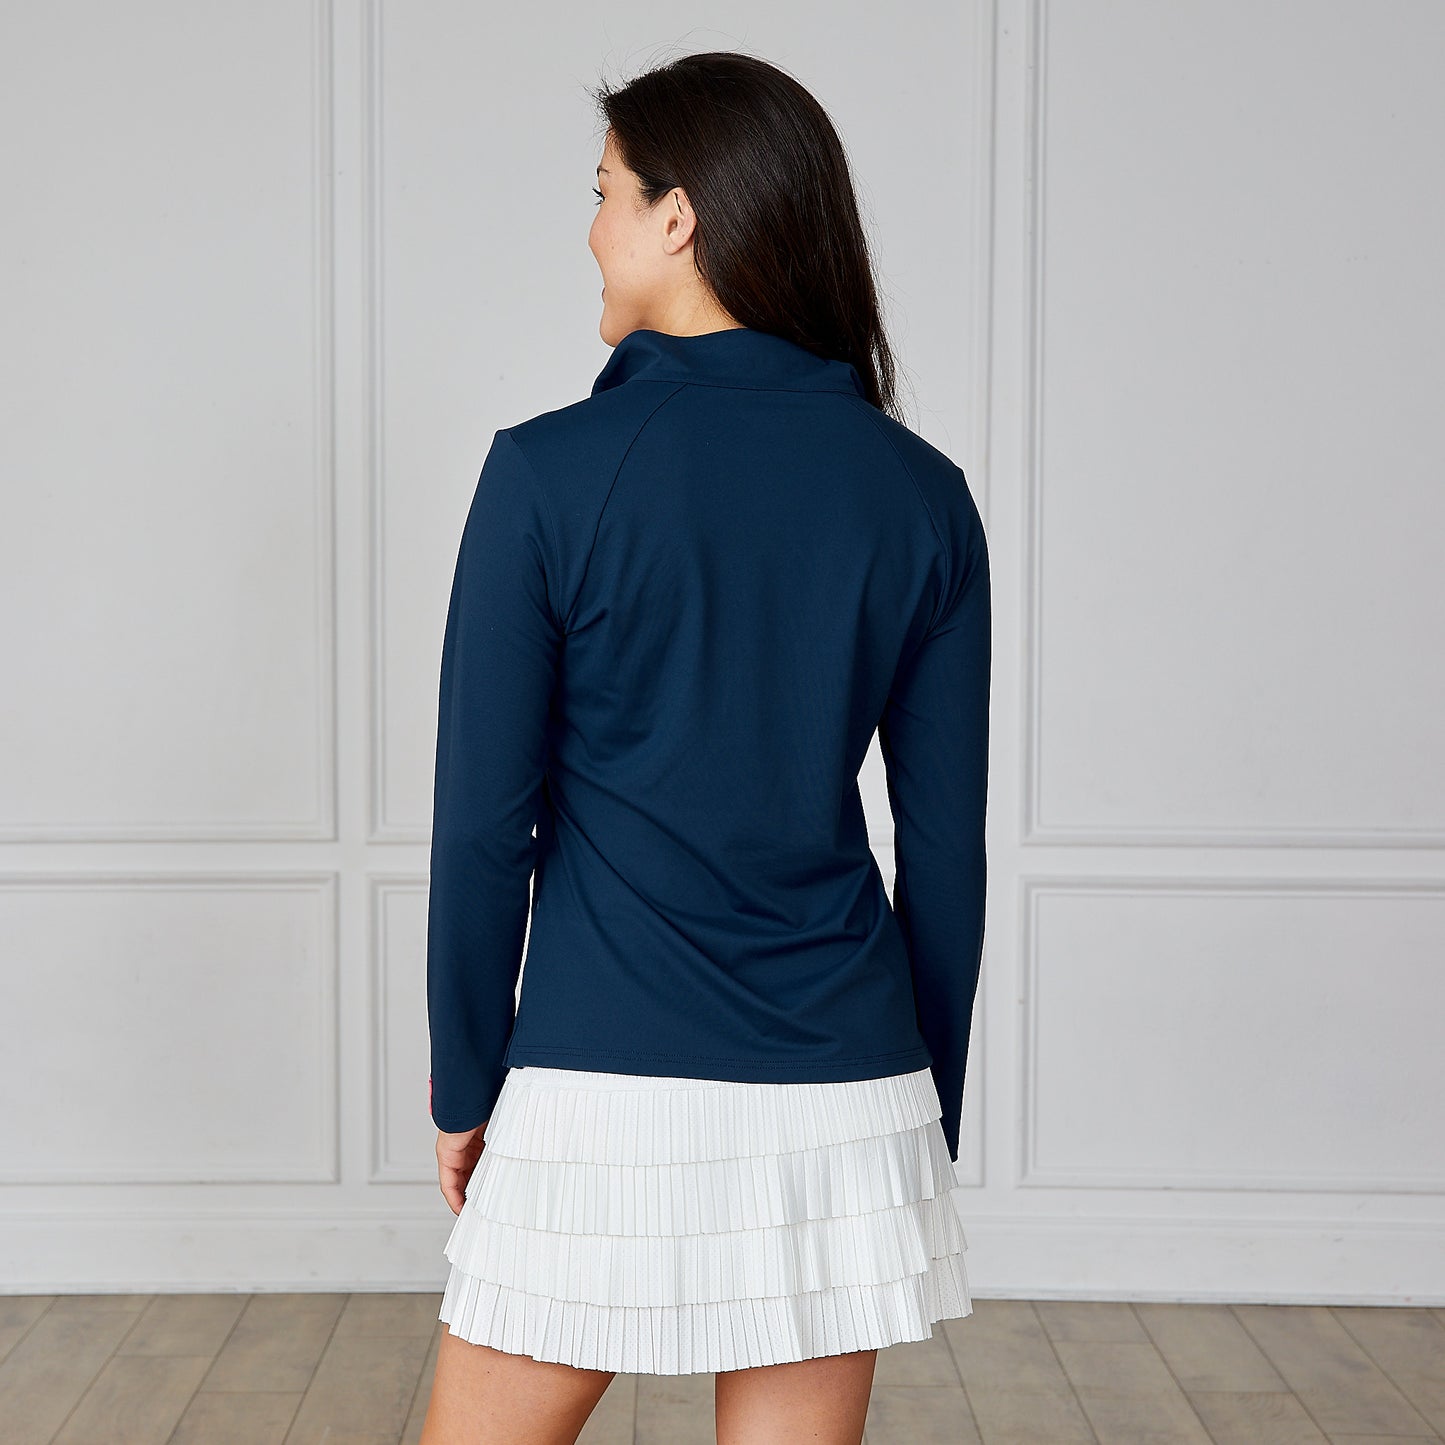 Women's 1/4 Zip Pullover Navy Blue